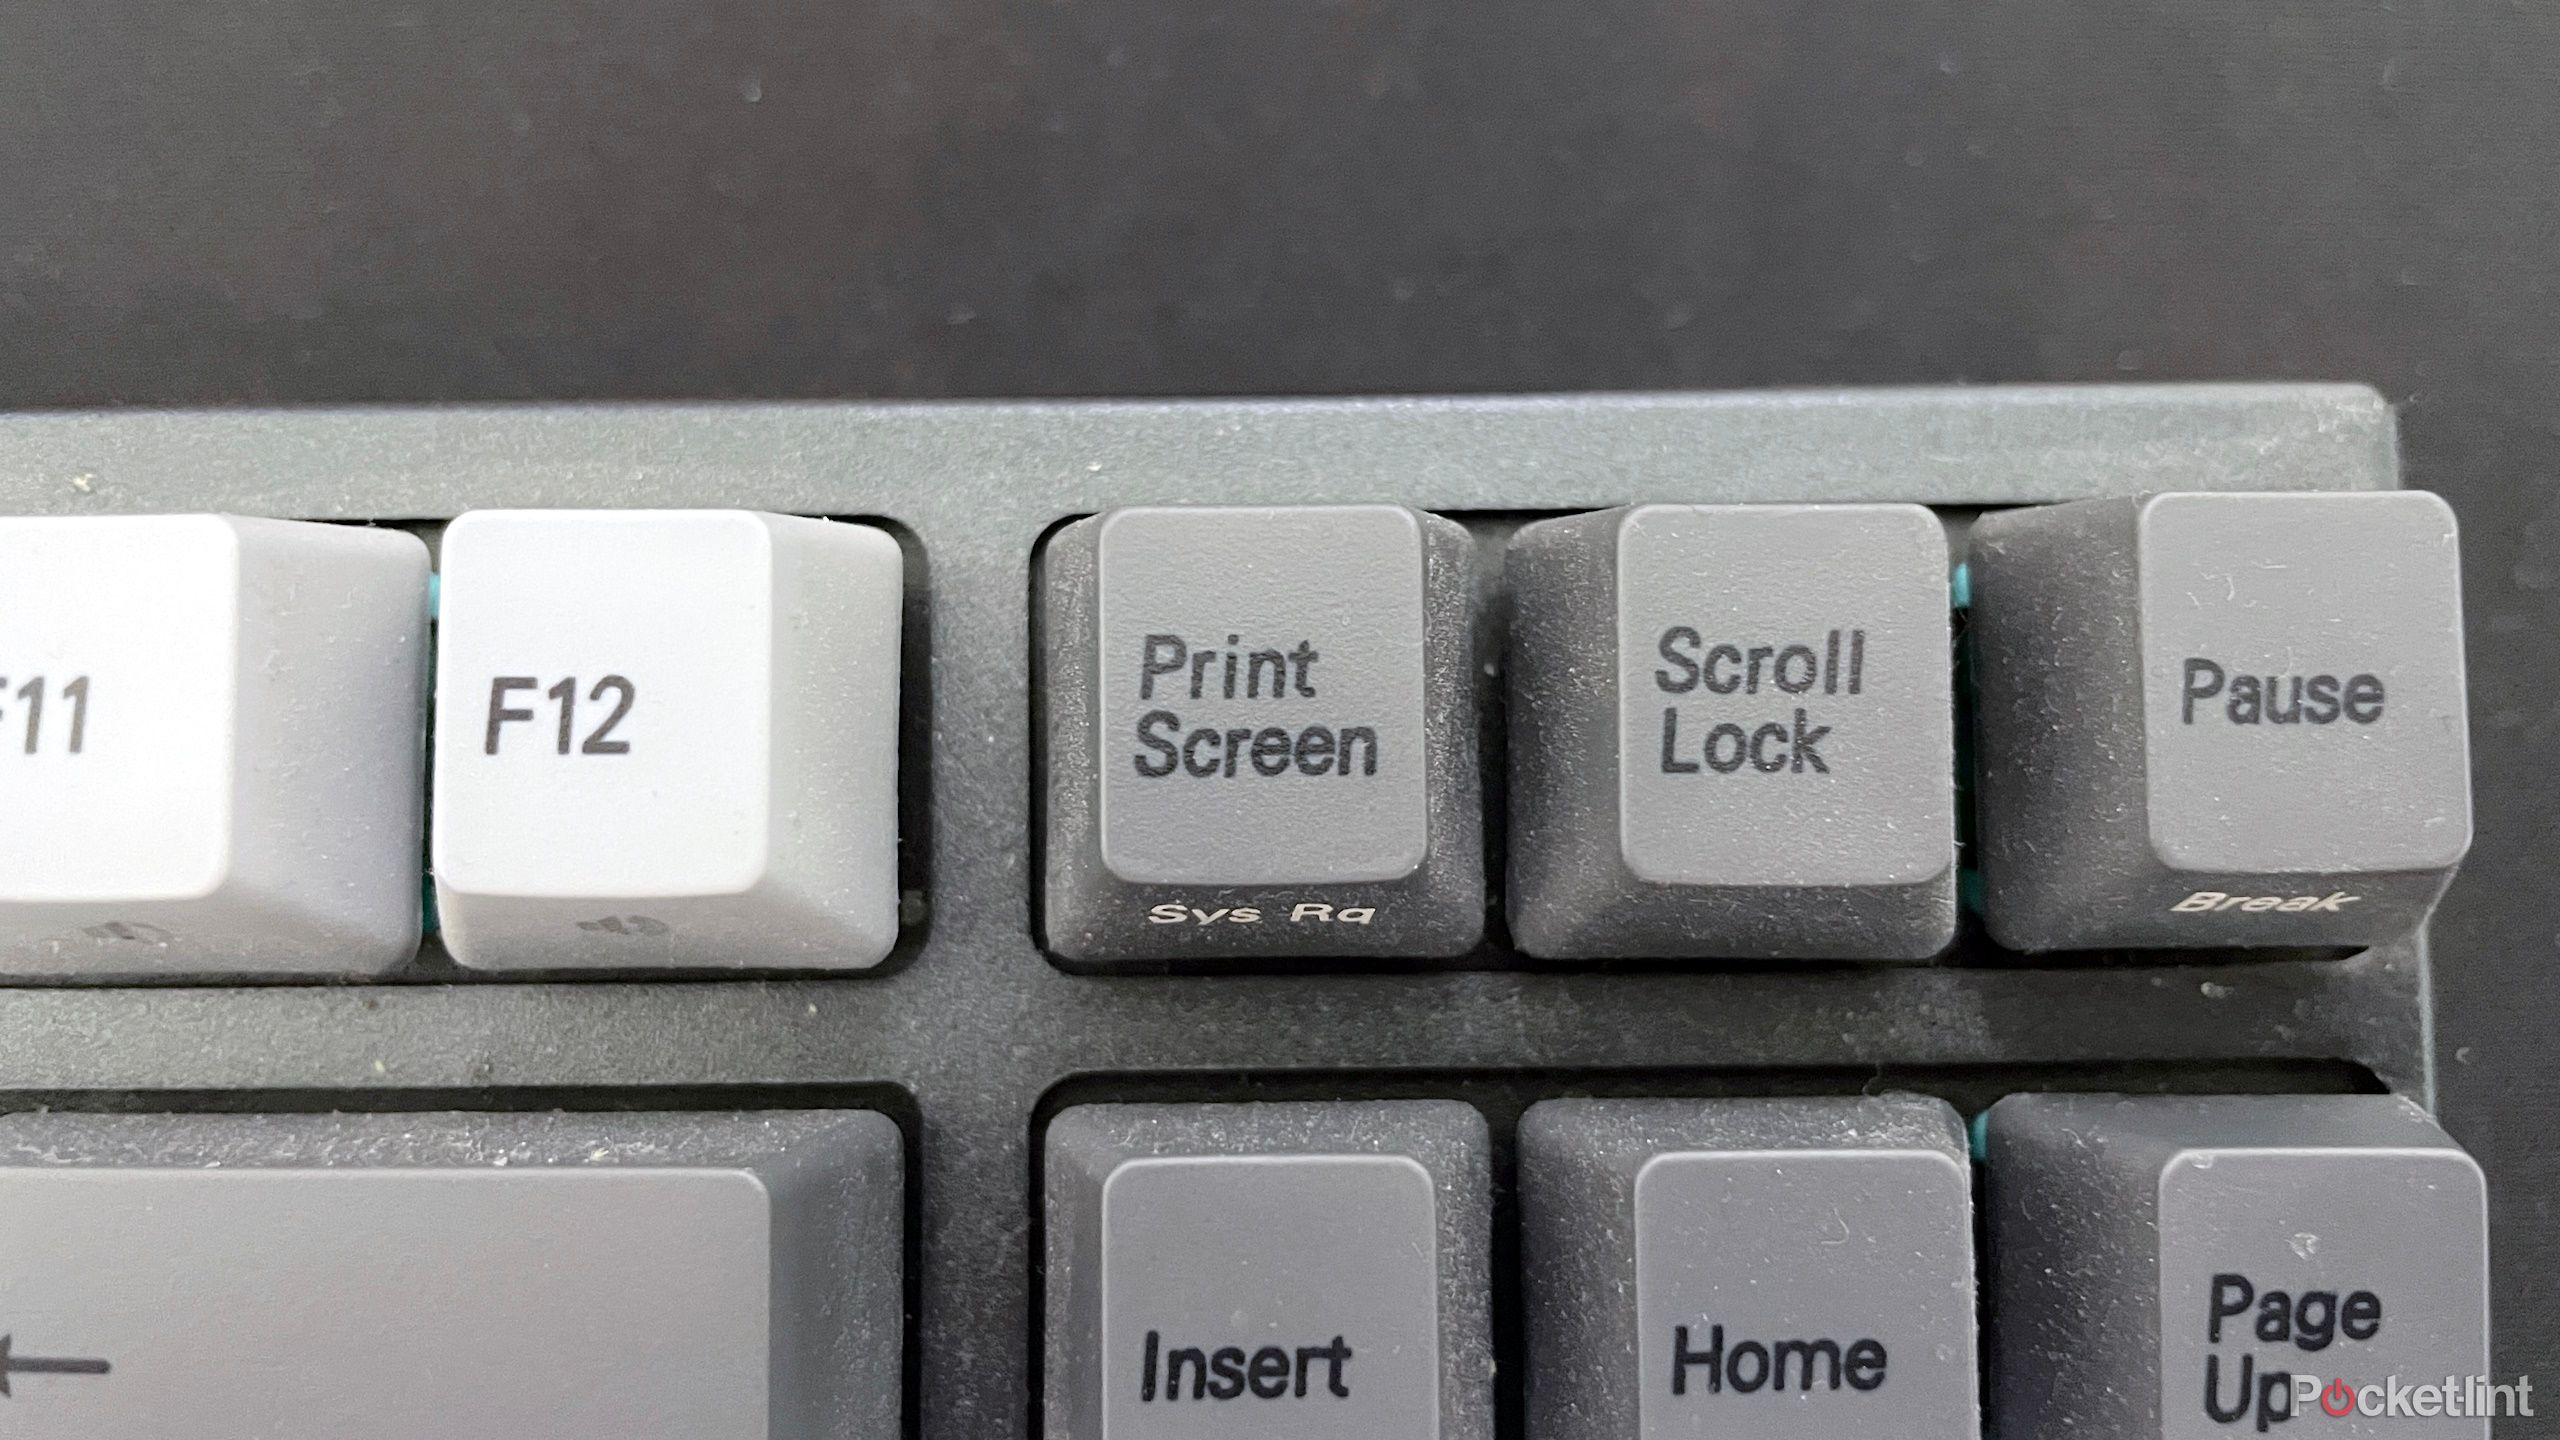 Varmillo keyboard showing Print Screen key